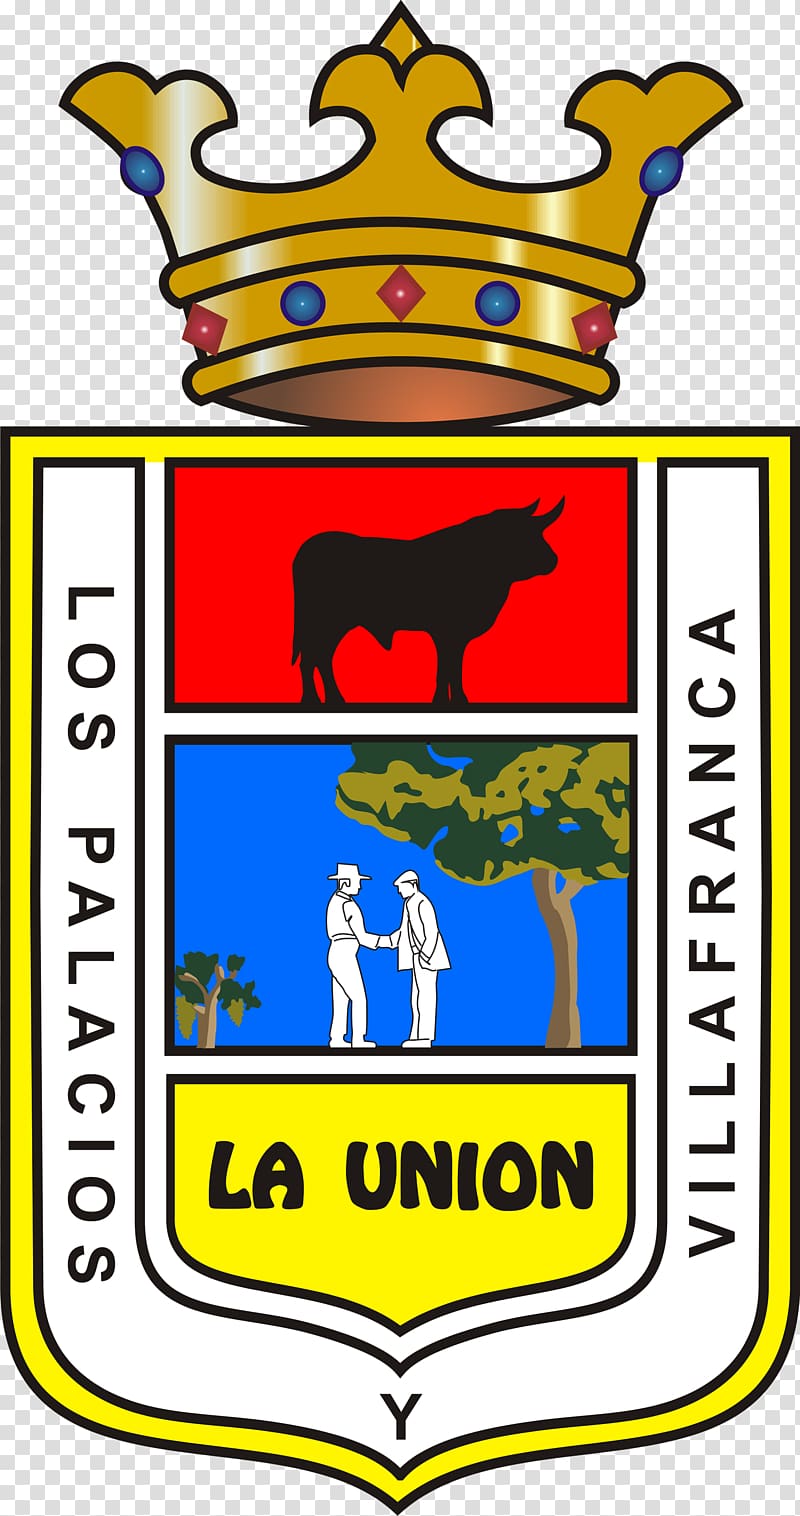 Ayuntamiento de Los Palacios y Villafranca Utrera El Saucejo Las Cabezas de San Juan Lebrija, success transparent background PNG clipart